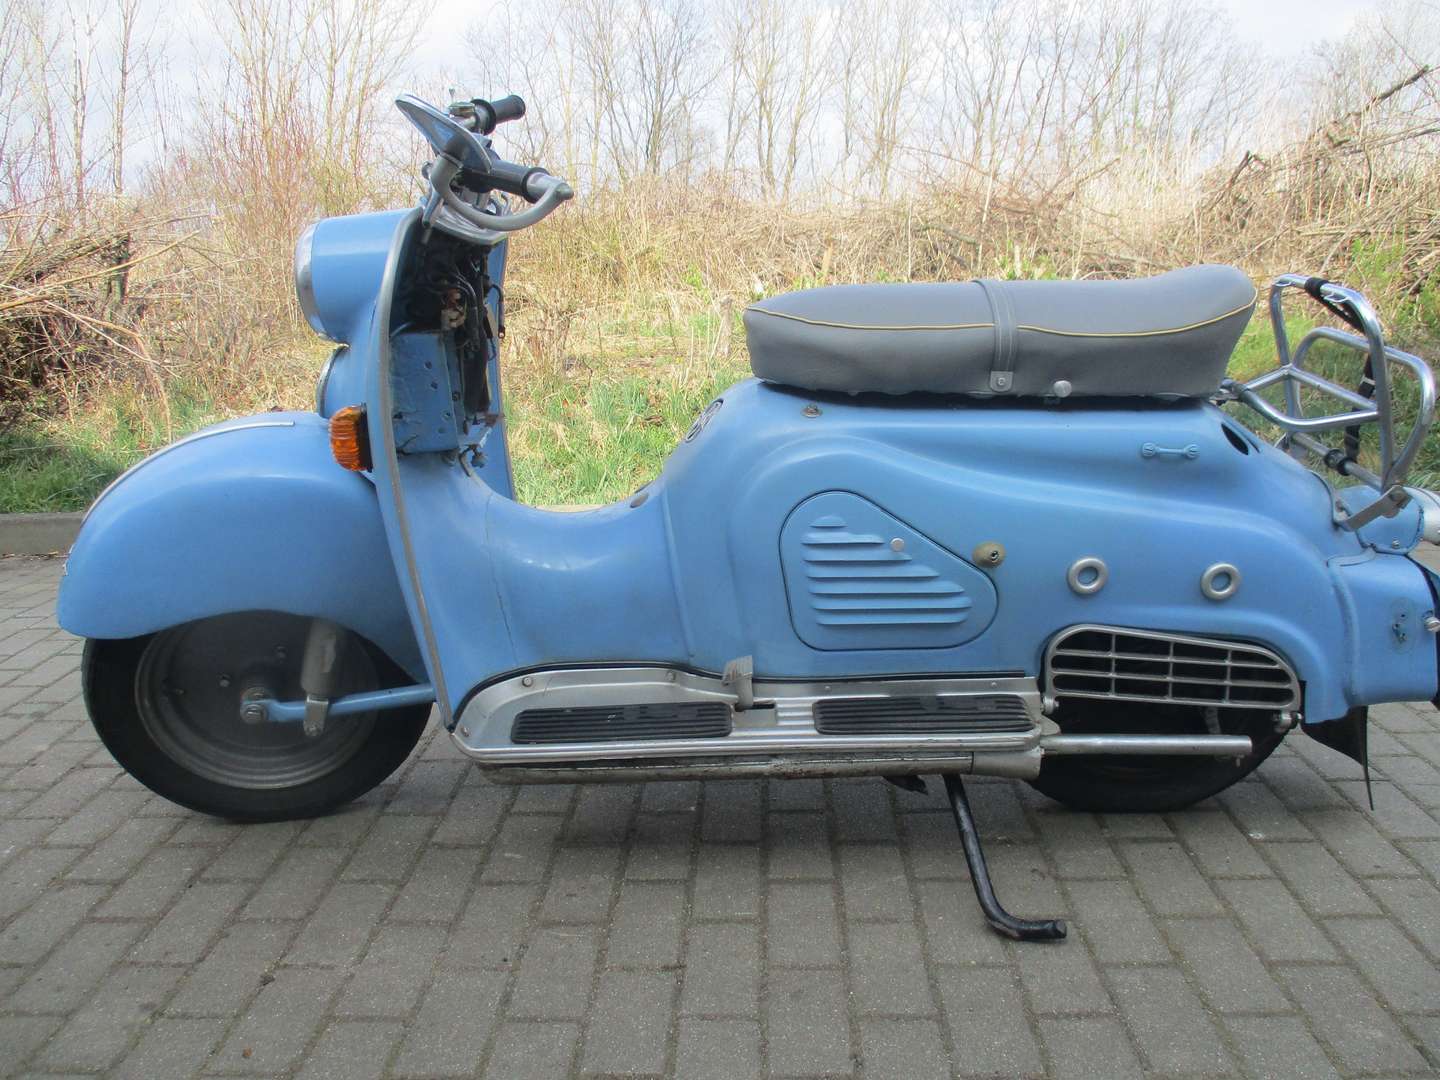 Zündapp Bella Roller Roller/Scooter in Blau gebraucht in Calau für € 3.500,-